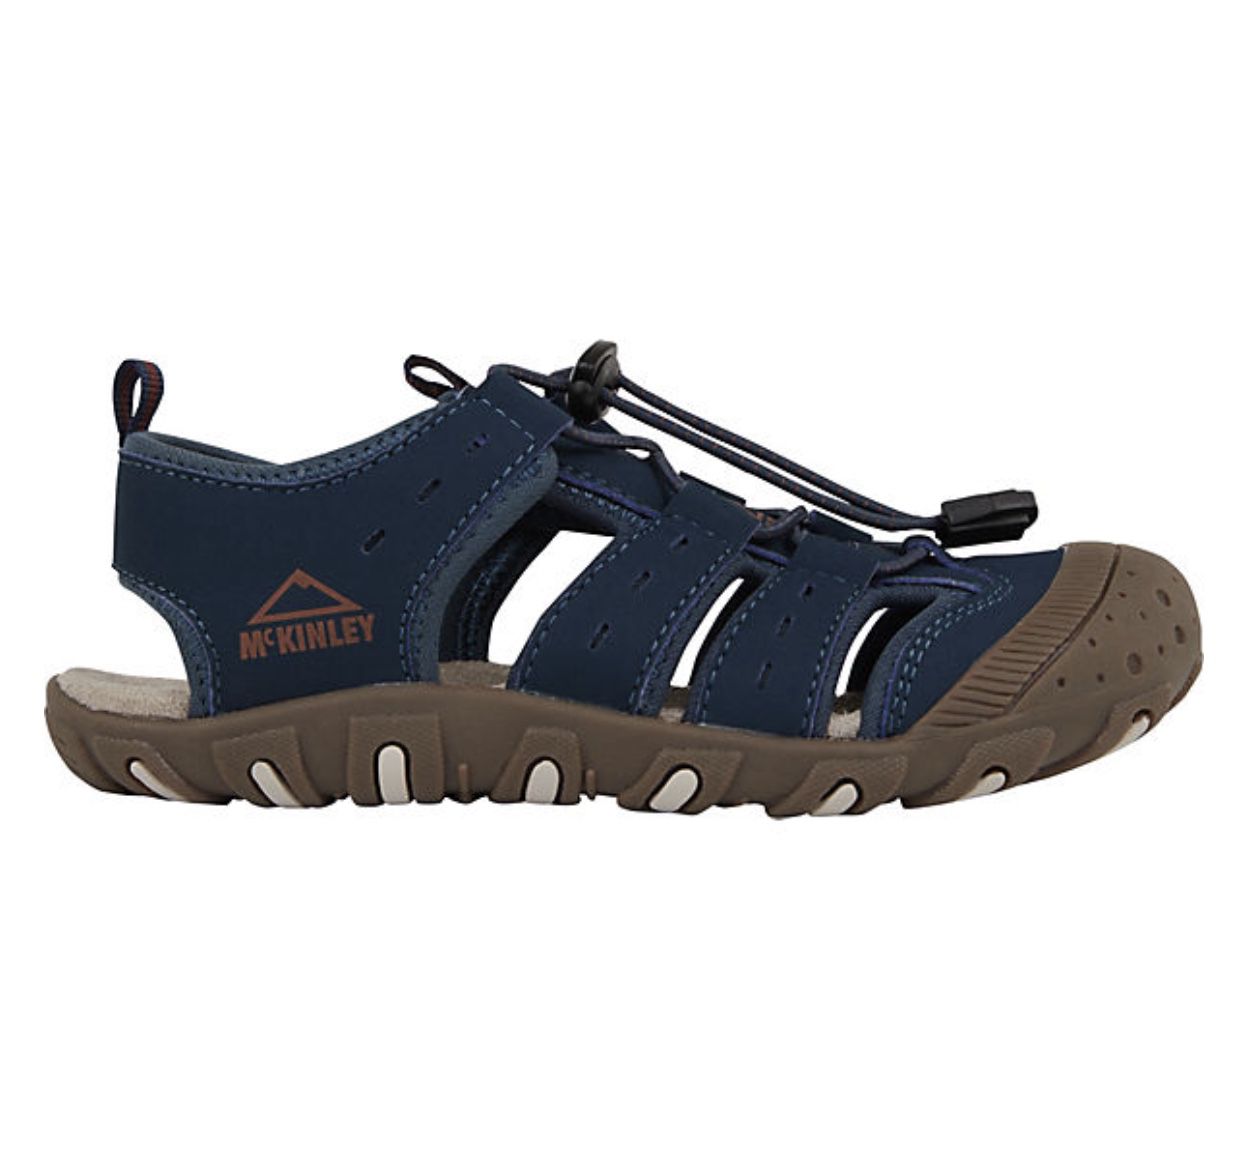 McKinley Korfu Kinder Trekking-Sandalen für 13,98€ (statt 34€)